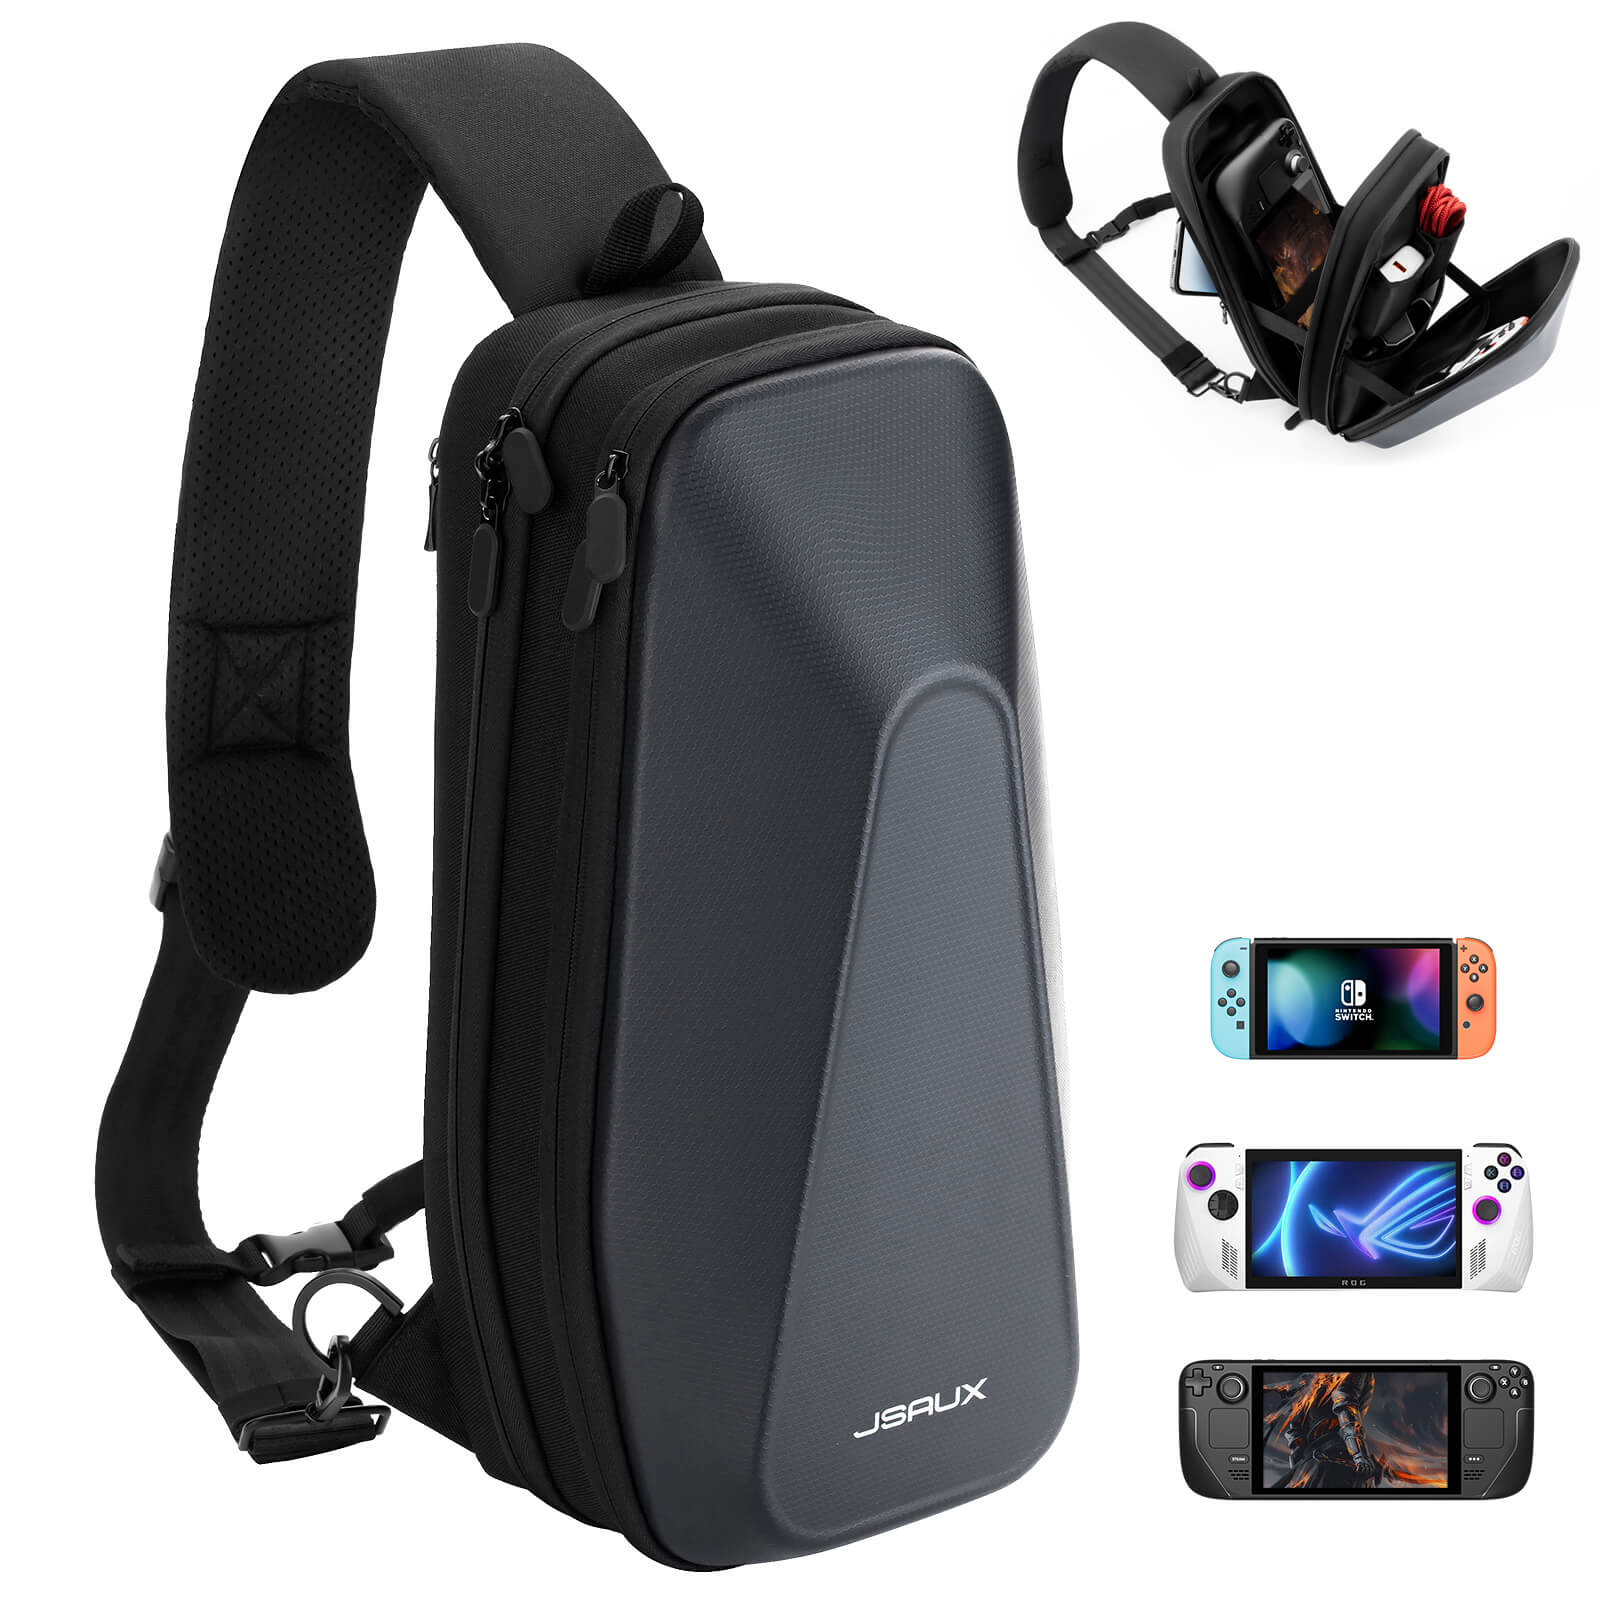 Shoulder Bag for Handheld#size_bg0105a for handheld